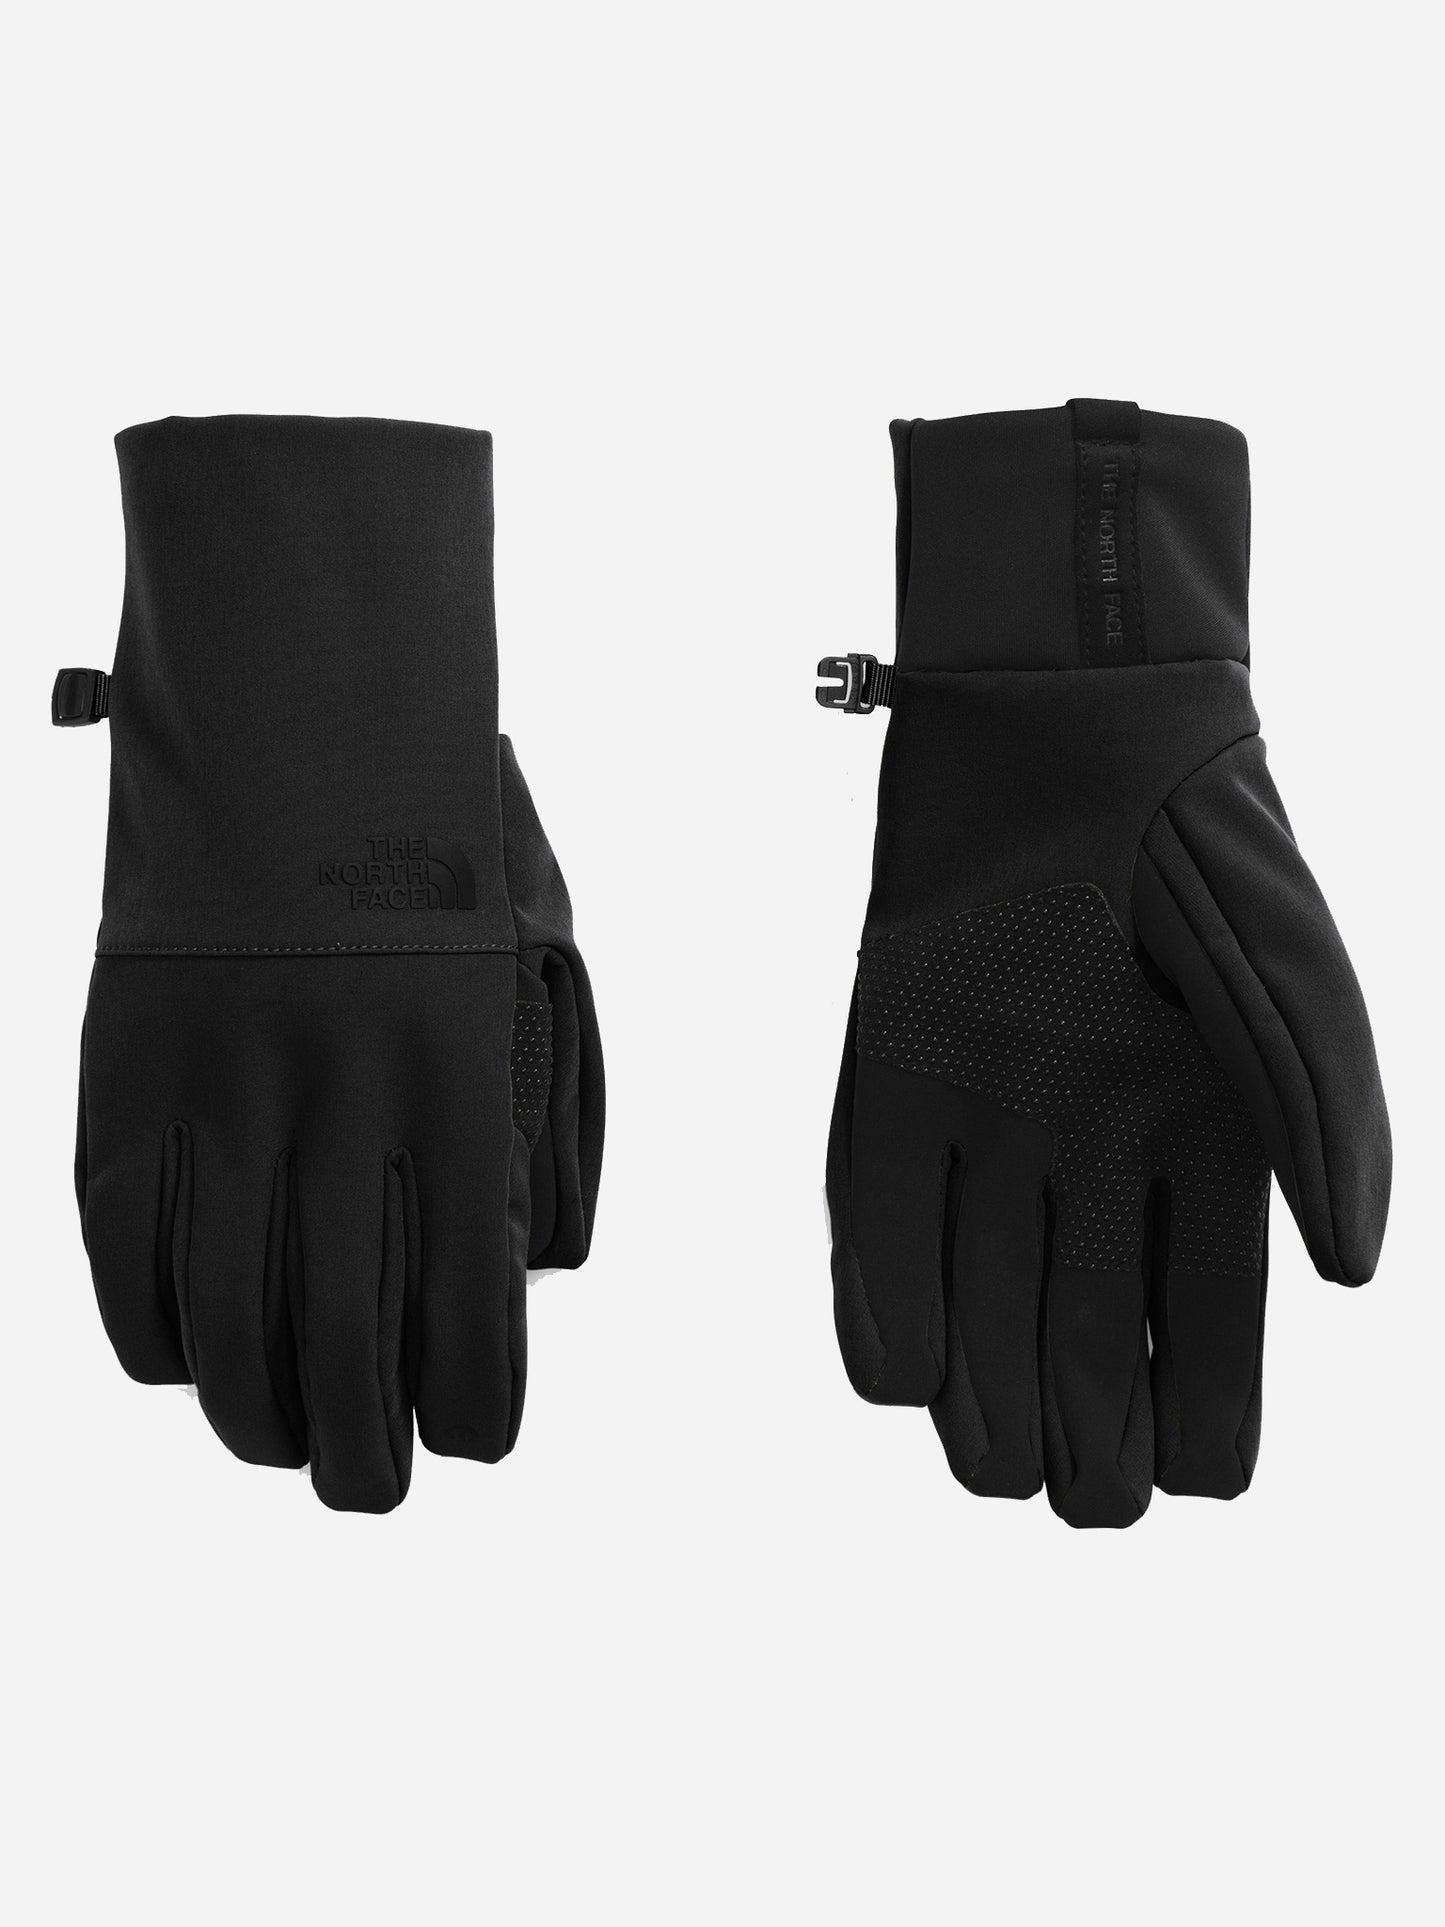 The North Face Men’s Apex Etip Glove